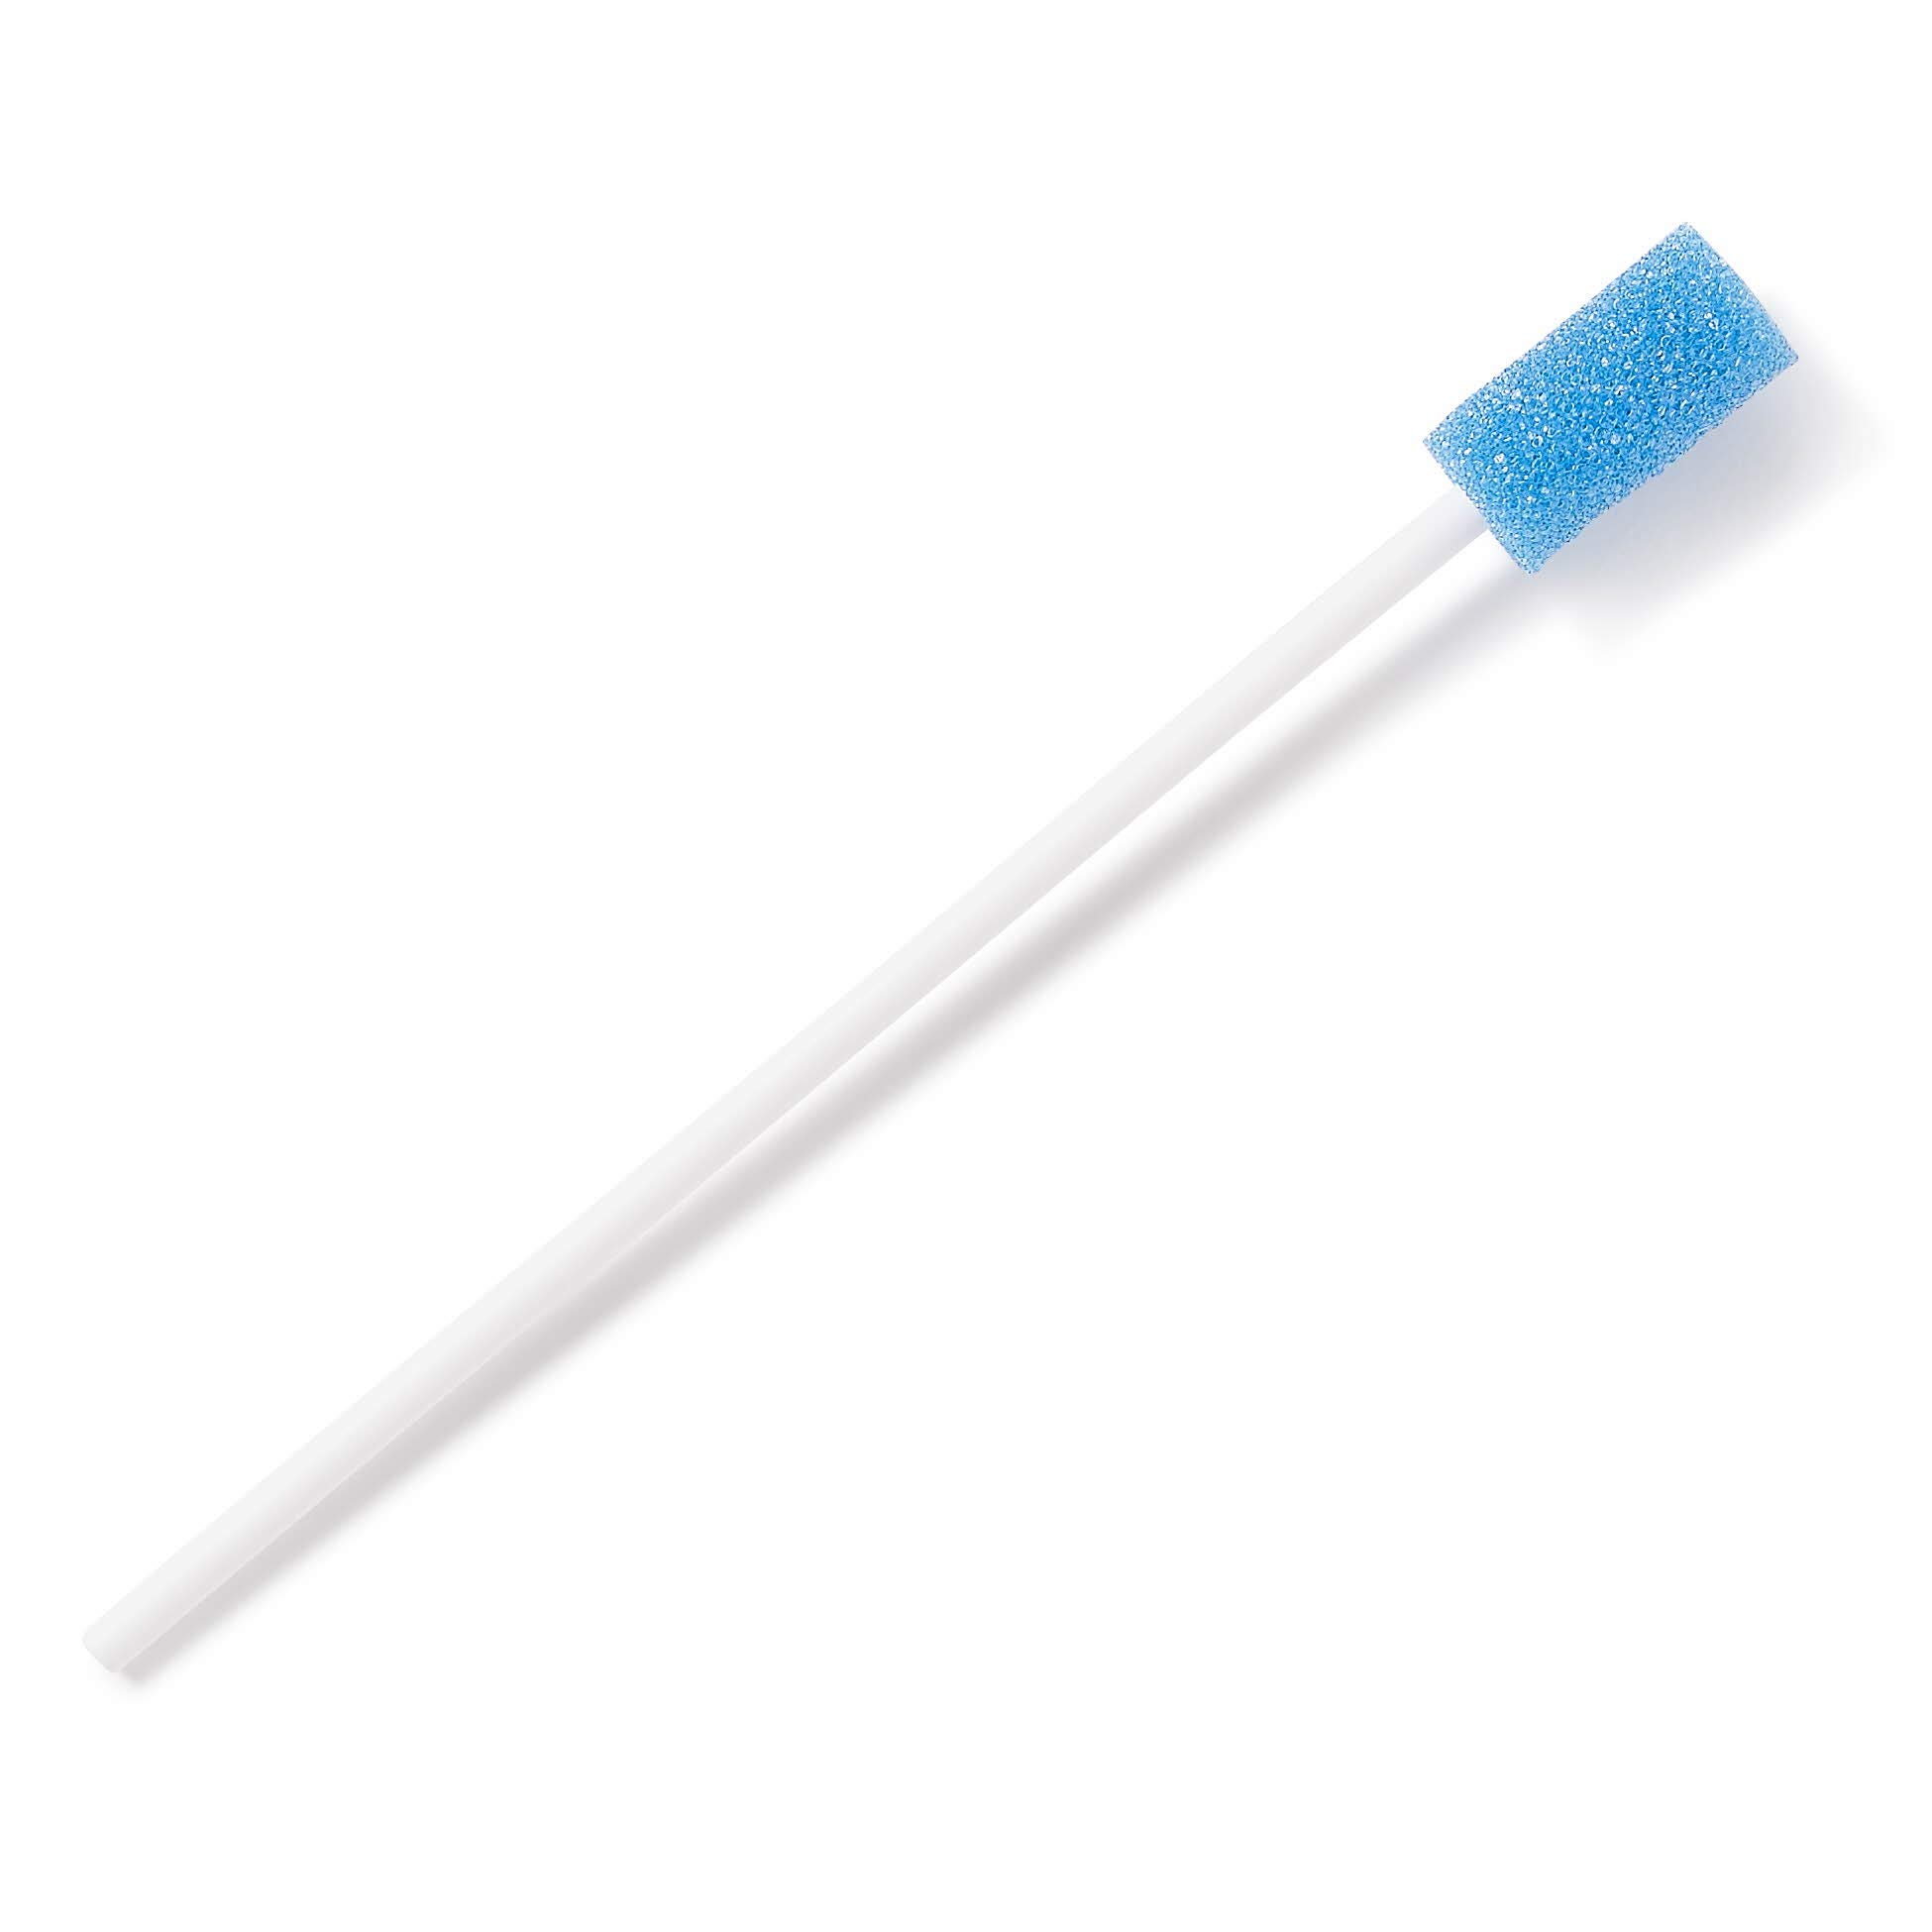 Medline Dentips Disposable Oral Swabsticks, Adult Untreated, Blue, 500 Count